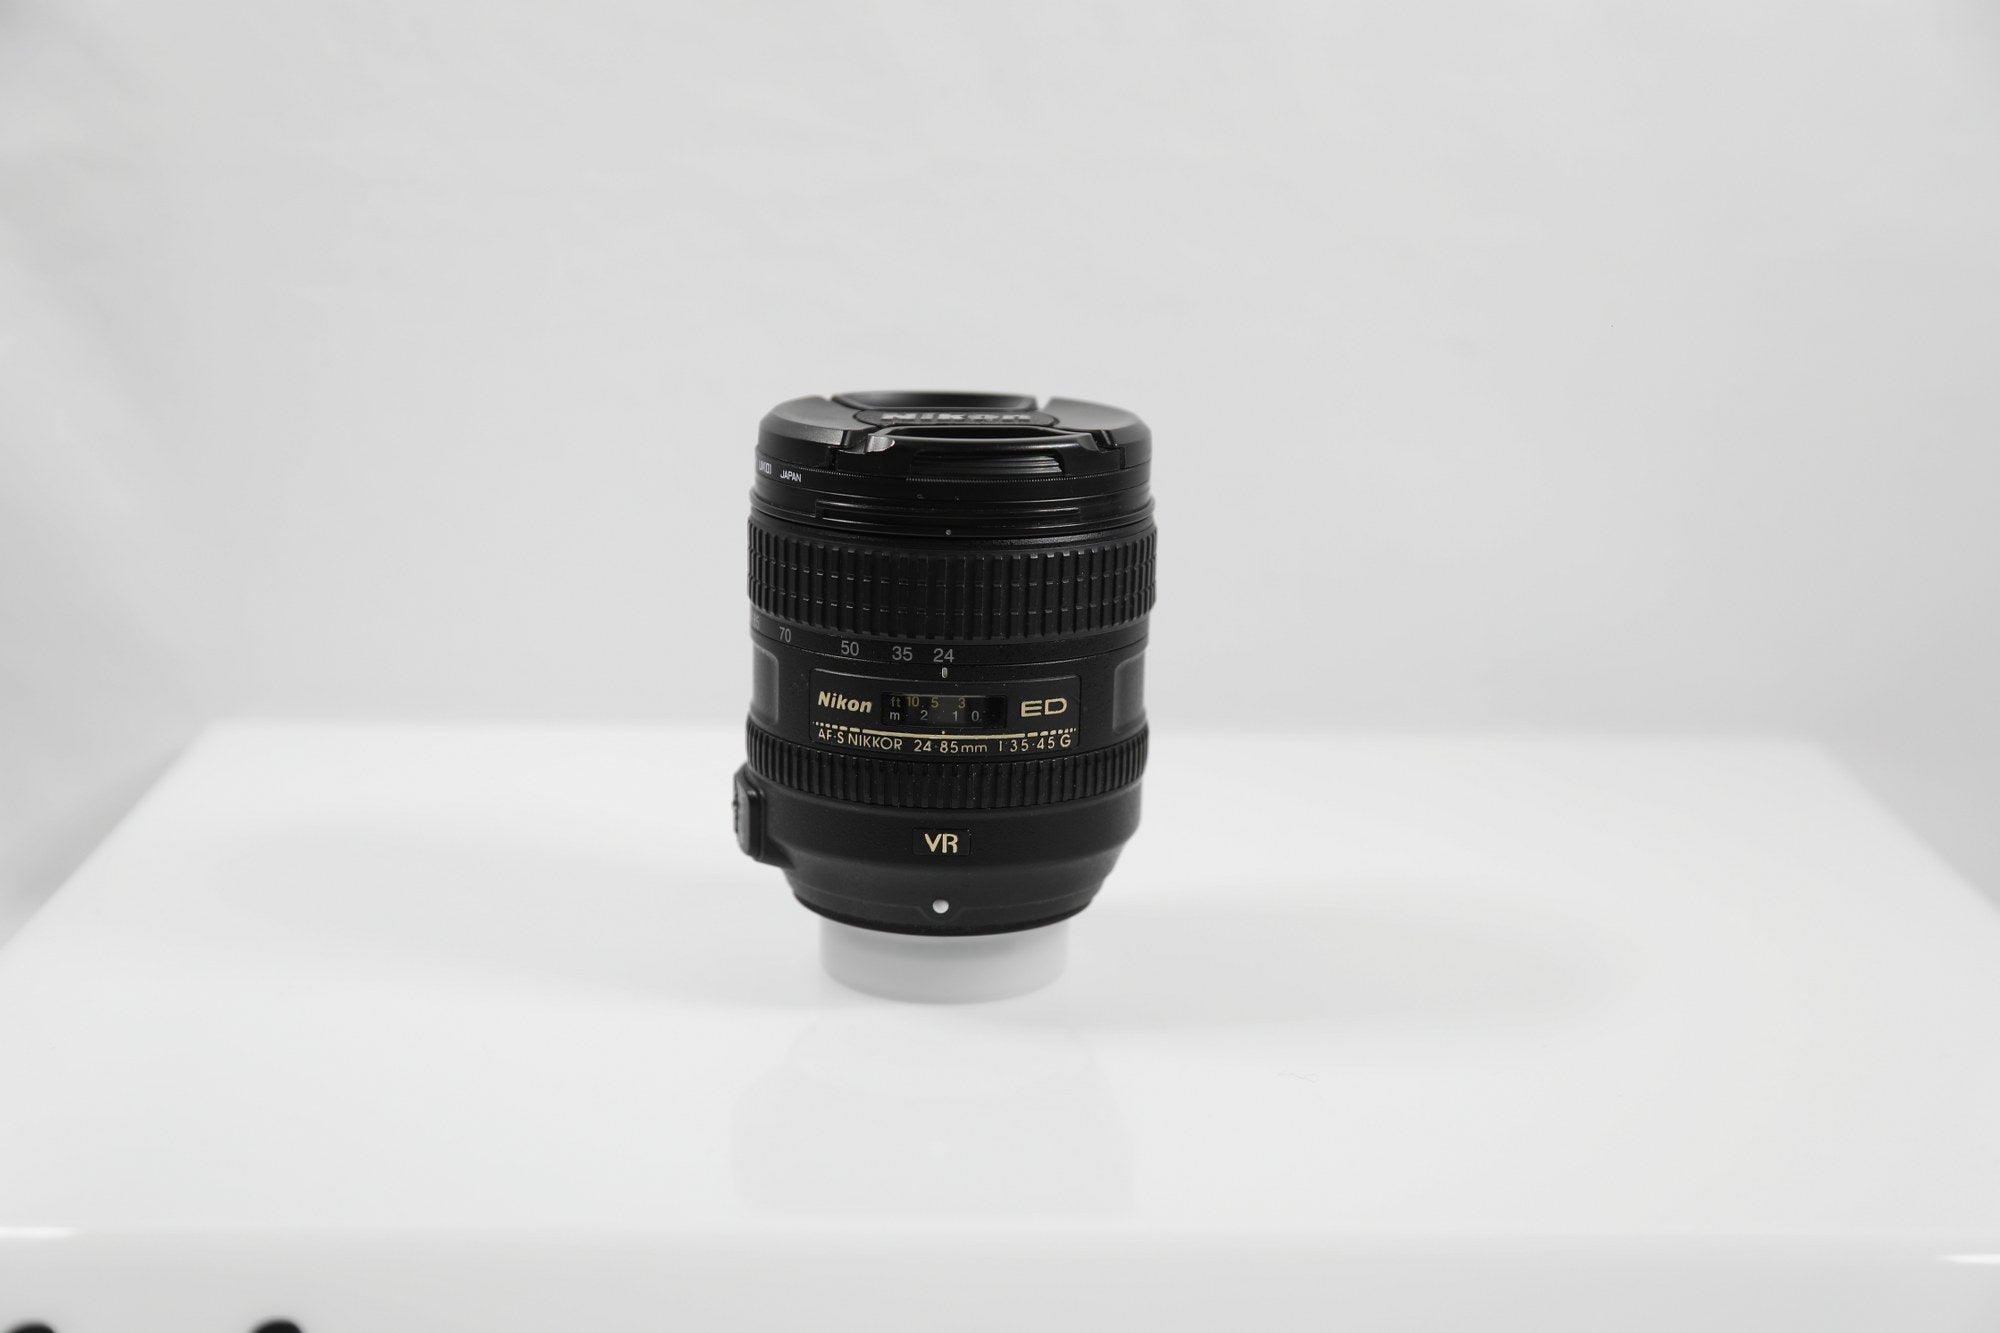 Objectif Nikon AF-S NIKKOR 24-85mm f/3.5-4.5G ED VR - Objectif monture F/format FX